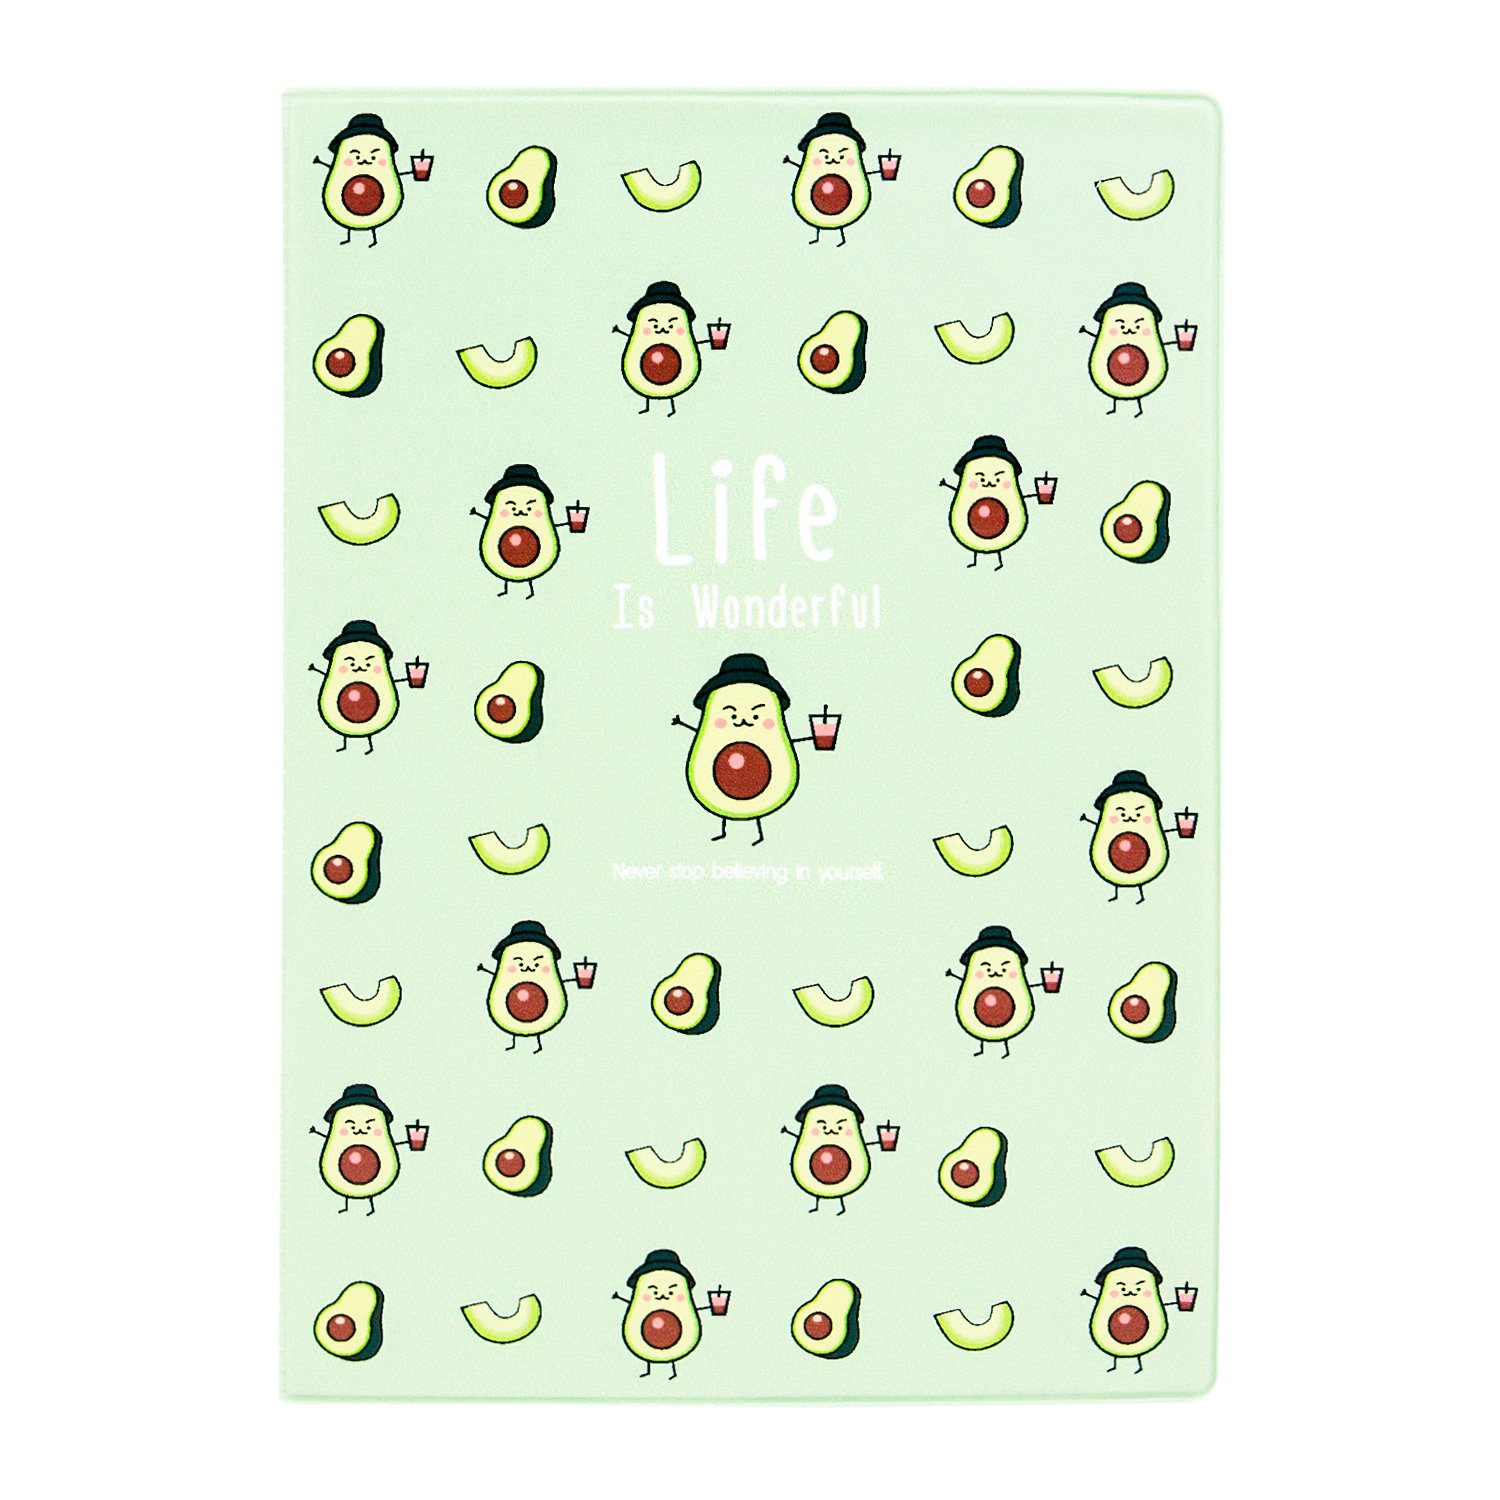 Обложка для паспорта Kawaii Factory KW064 Life is - avocados